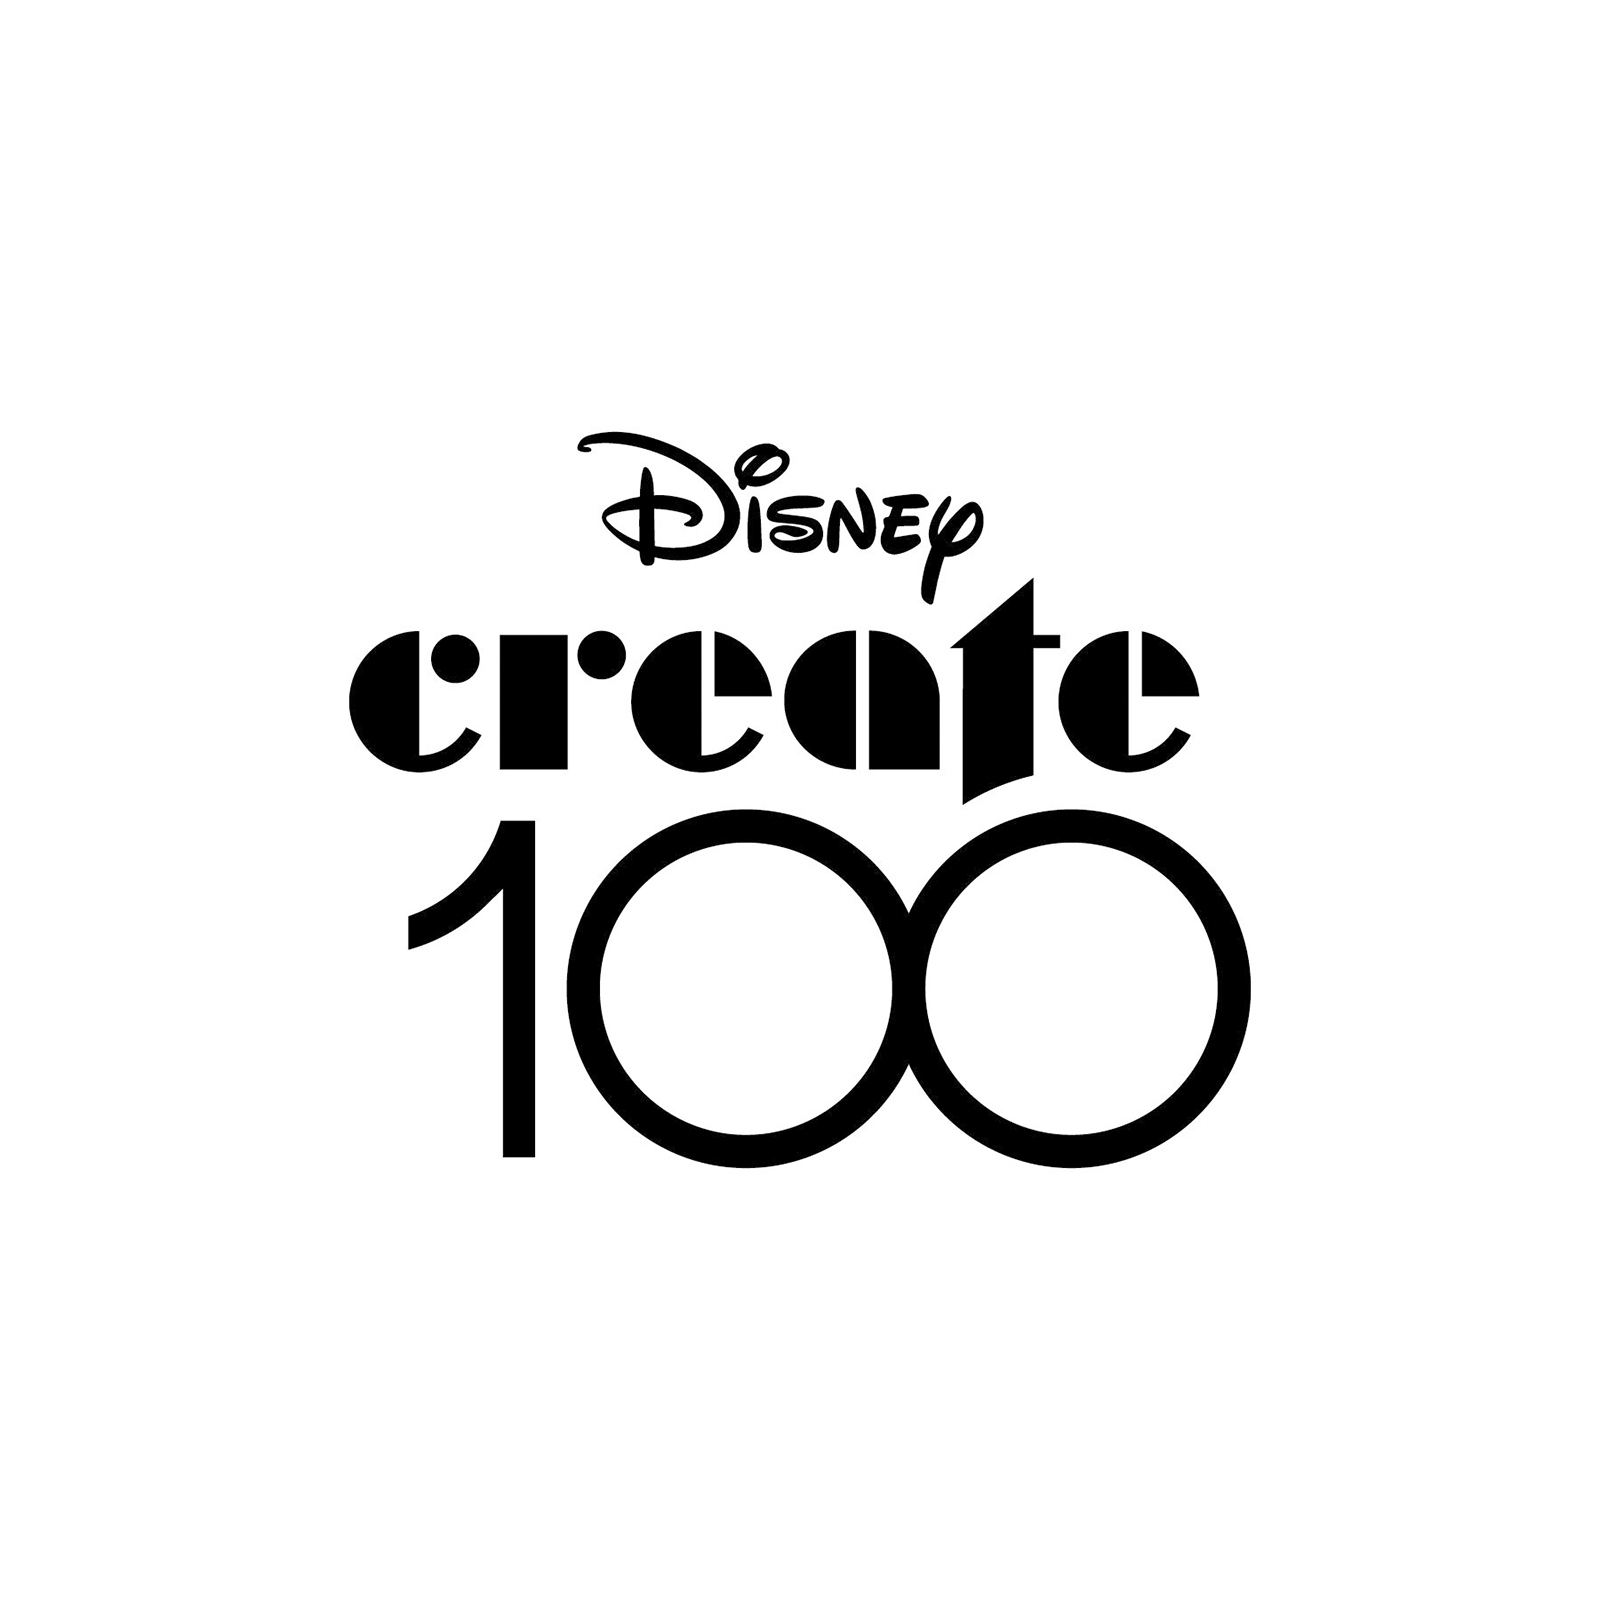 ディズニー創立100周年を祝した「Disney Create100」にNIGO®が選出